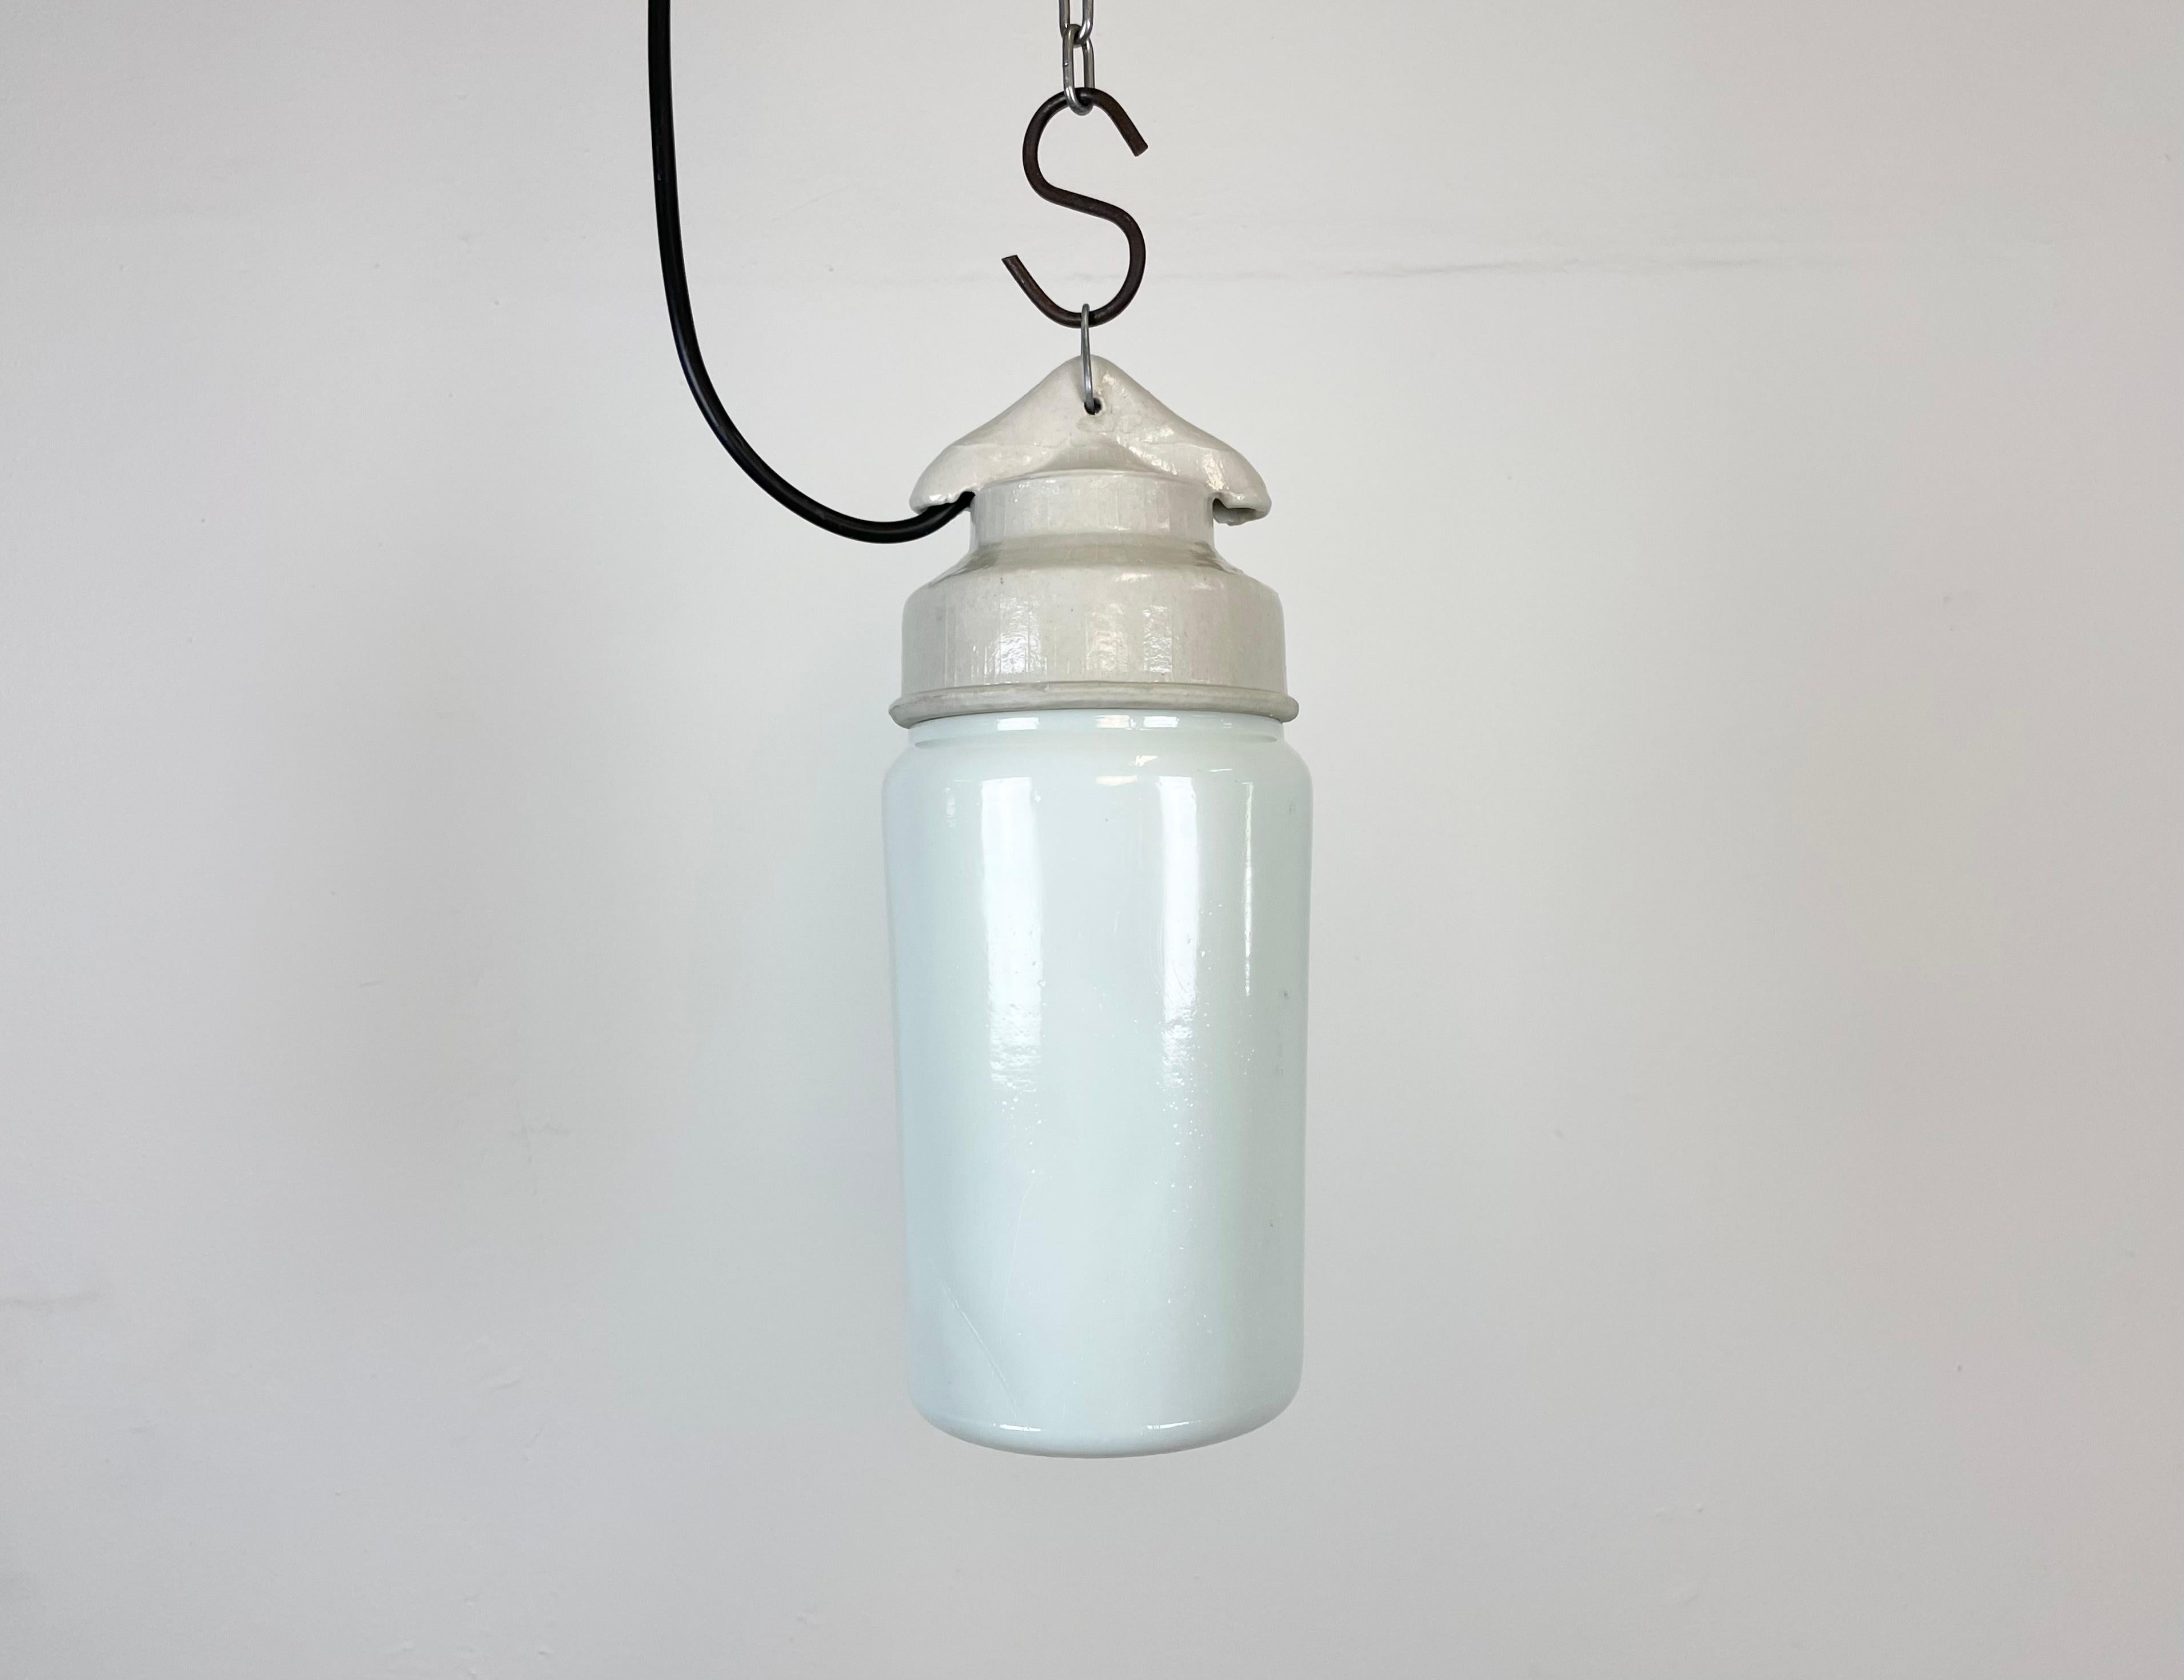 Luminaire industriel vintage fabriqué en ex-Union soviétique dans les années 1970, avec un plateau en porcelaine blanche et un couvercle en verre de lait. La douille requiert des ampoules E27. Nouveau fil. Le poids de la lampe est de 1kg.